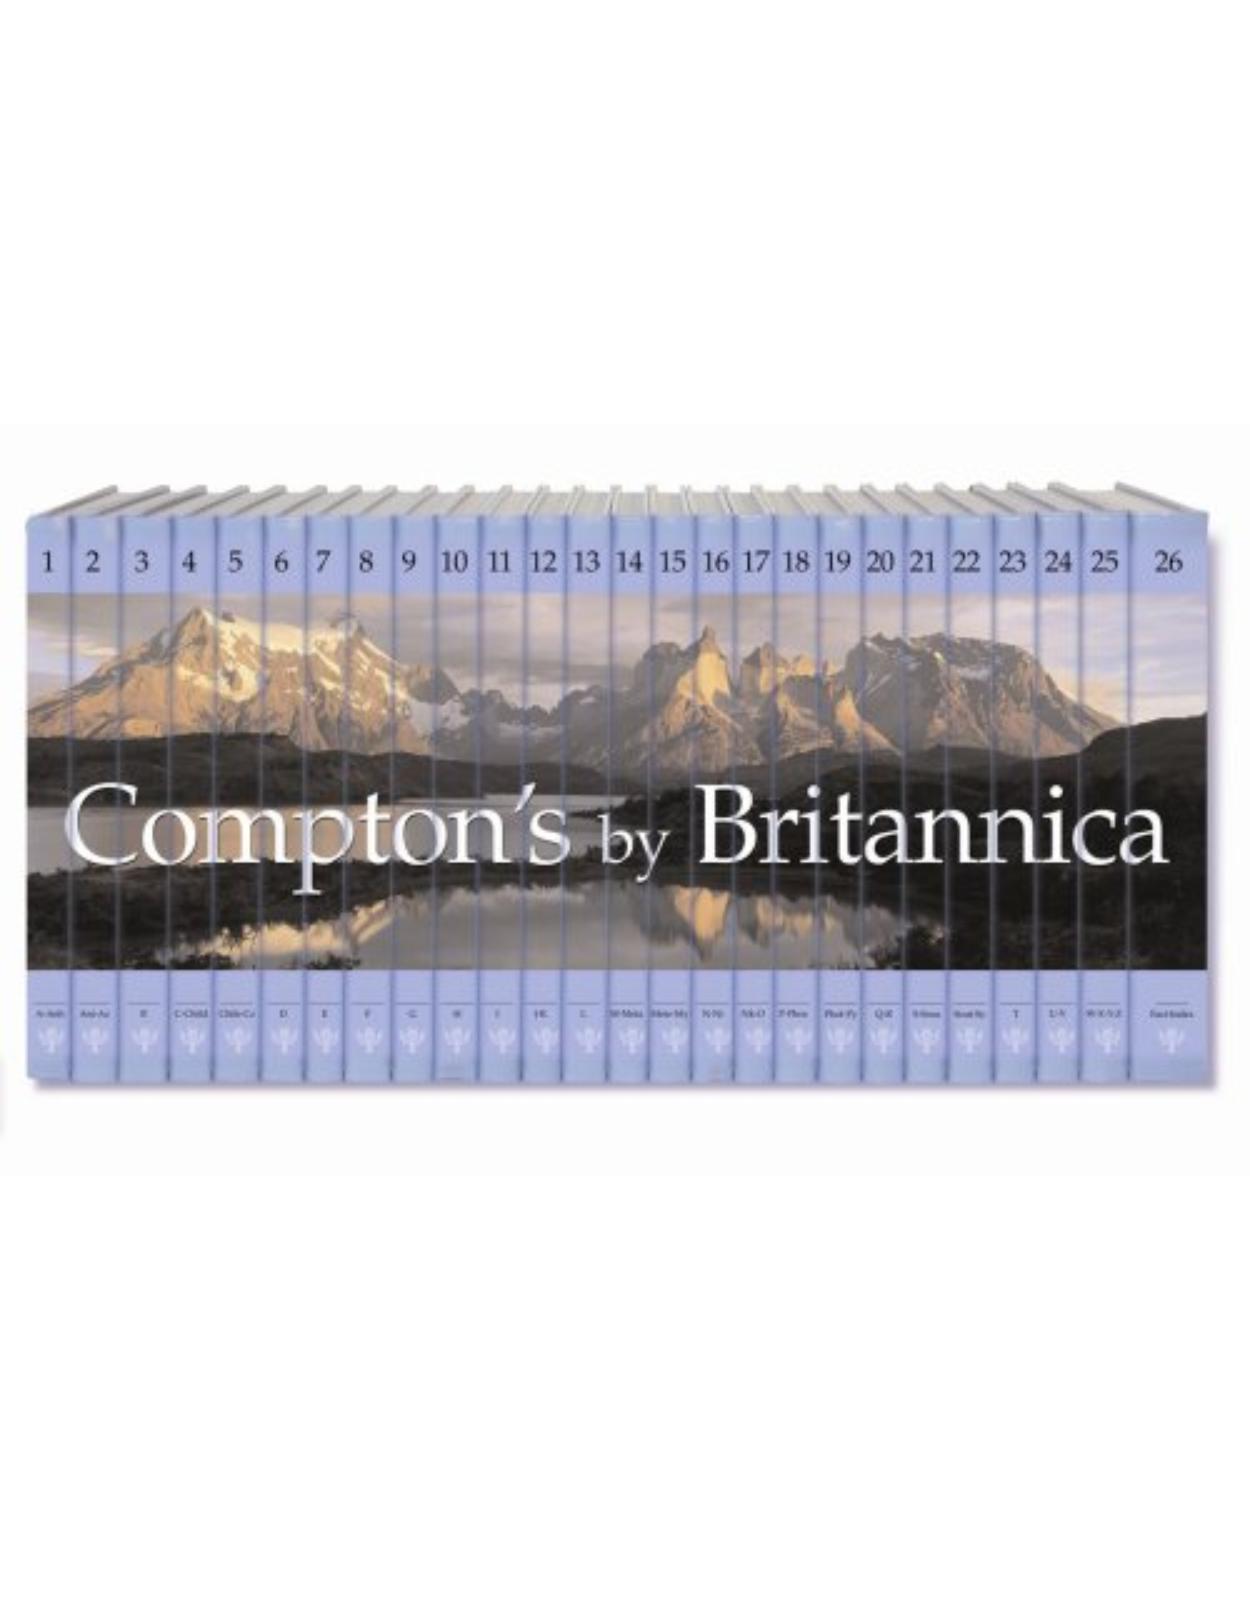 Compton’s By Britannica 26 vol/set